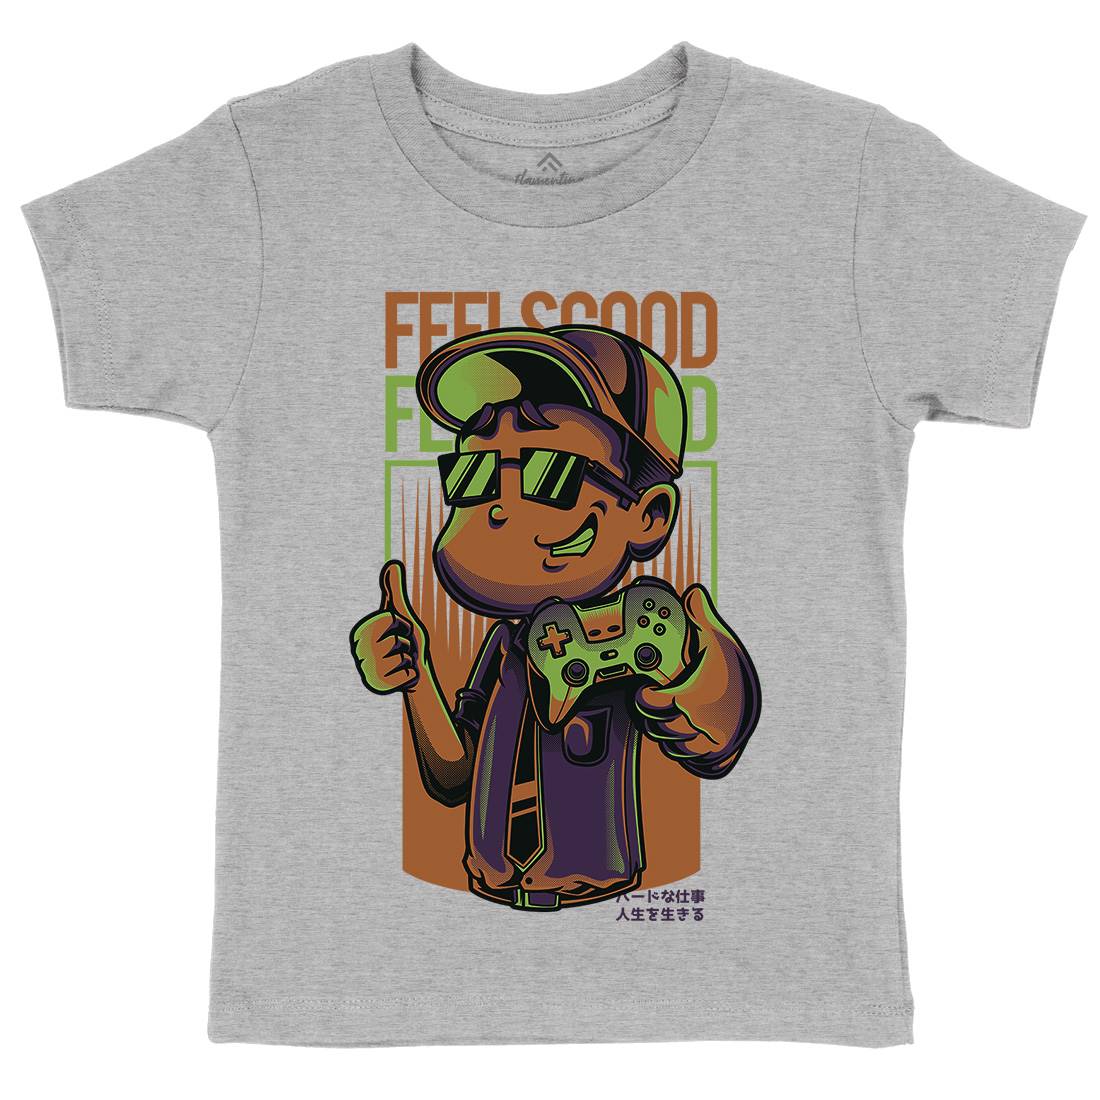 Feels Good Kids Crew Neck T-Shirt Geek D773